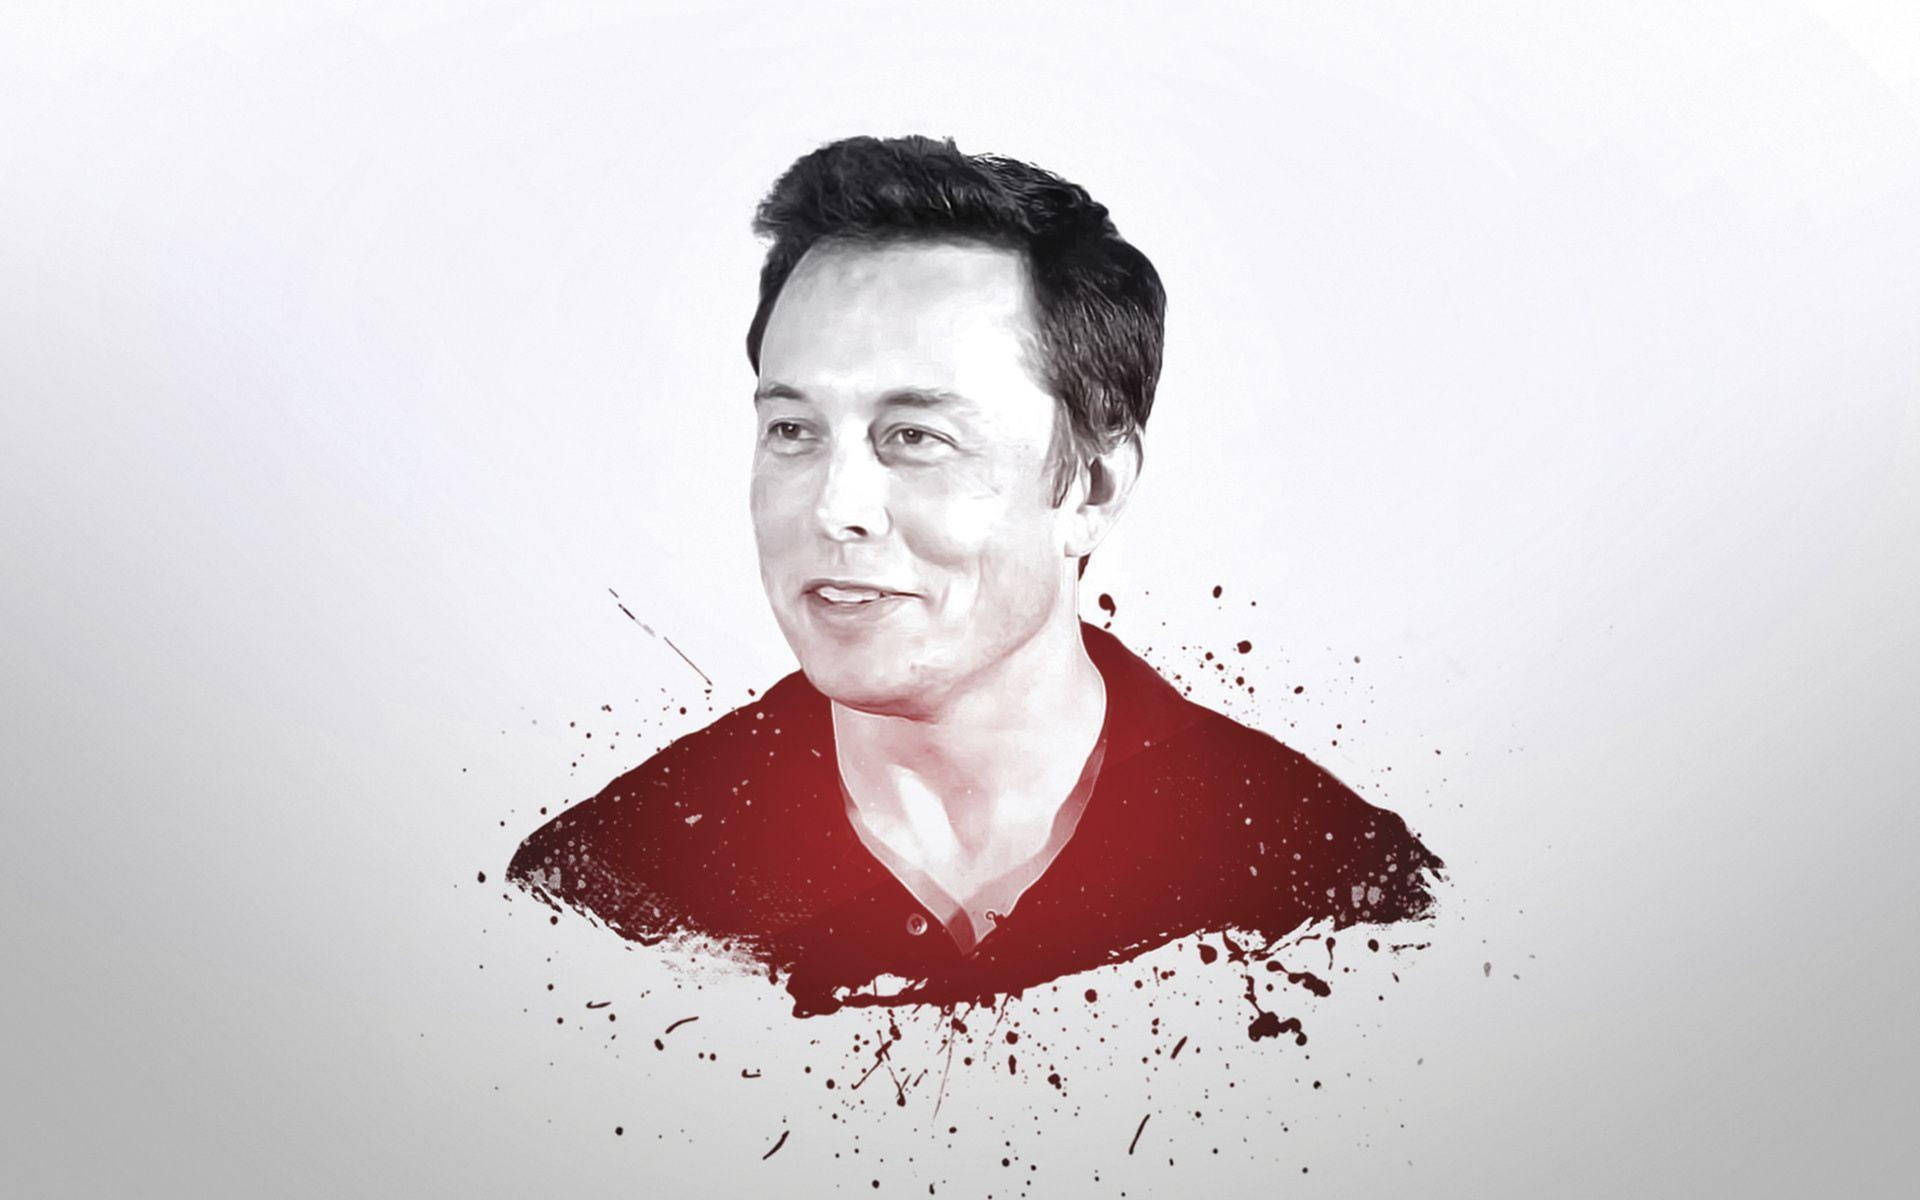 Elon Musk Abstract Portrait Wallpaper